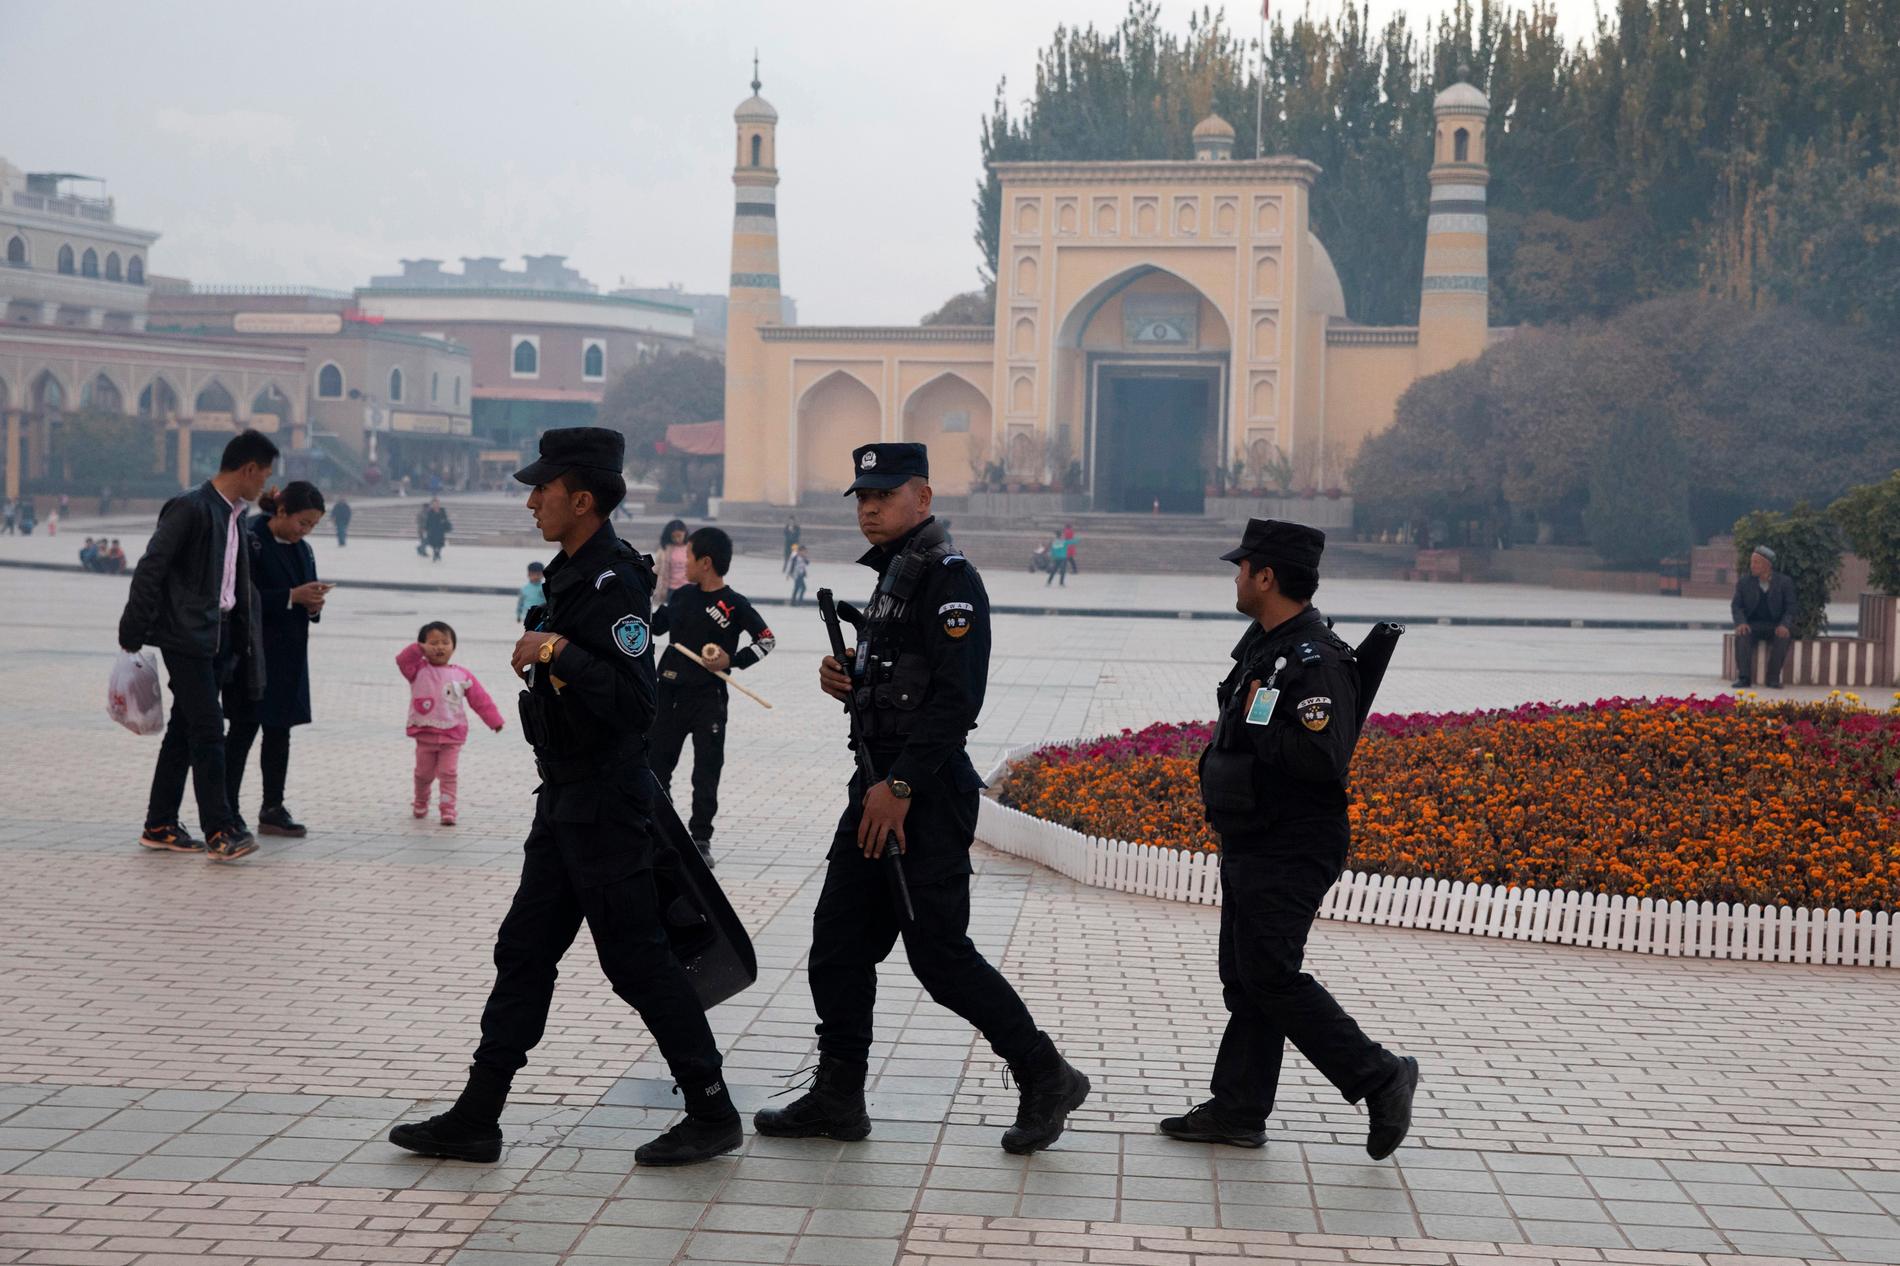 Säkerhetspersonal på patrull i närheten av en moské i Kashgar i Xinjiang-regionen i västra Kina. Arkivbild.